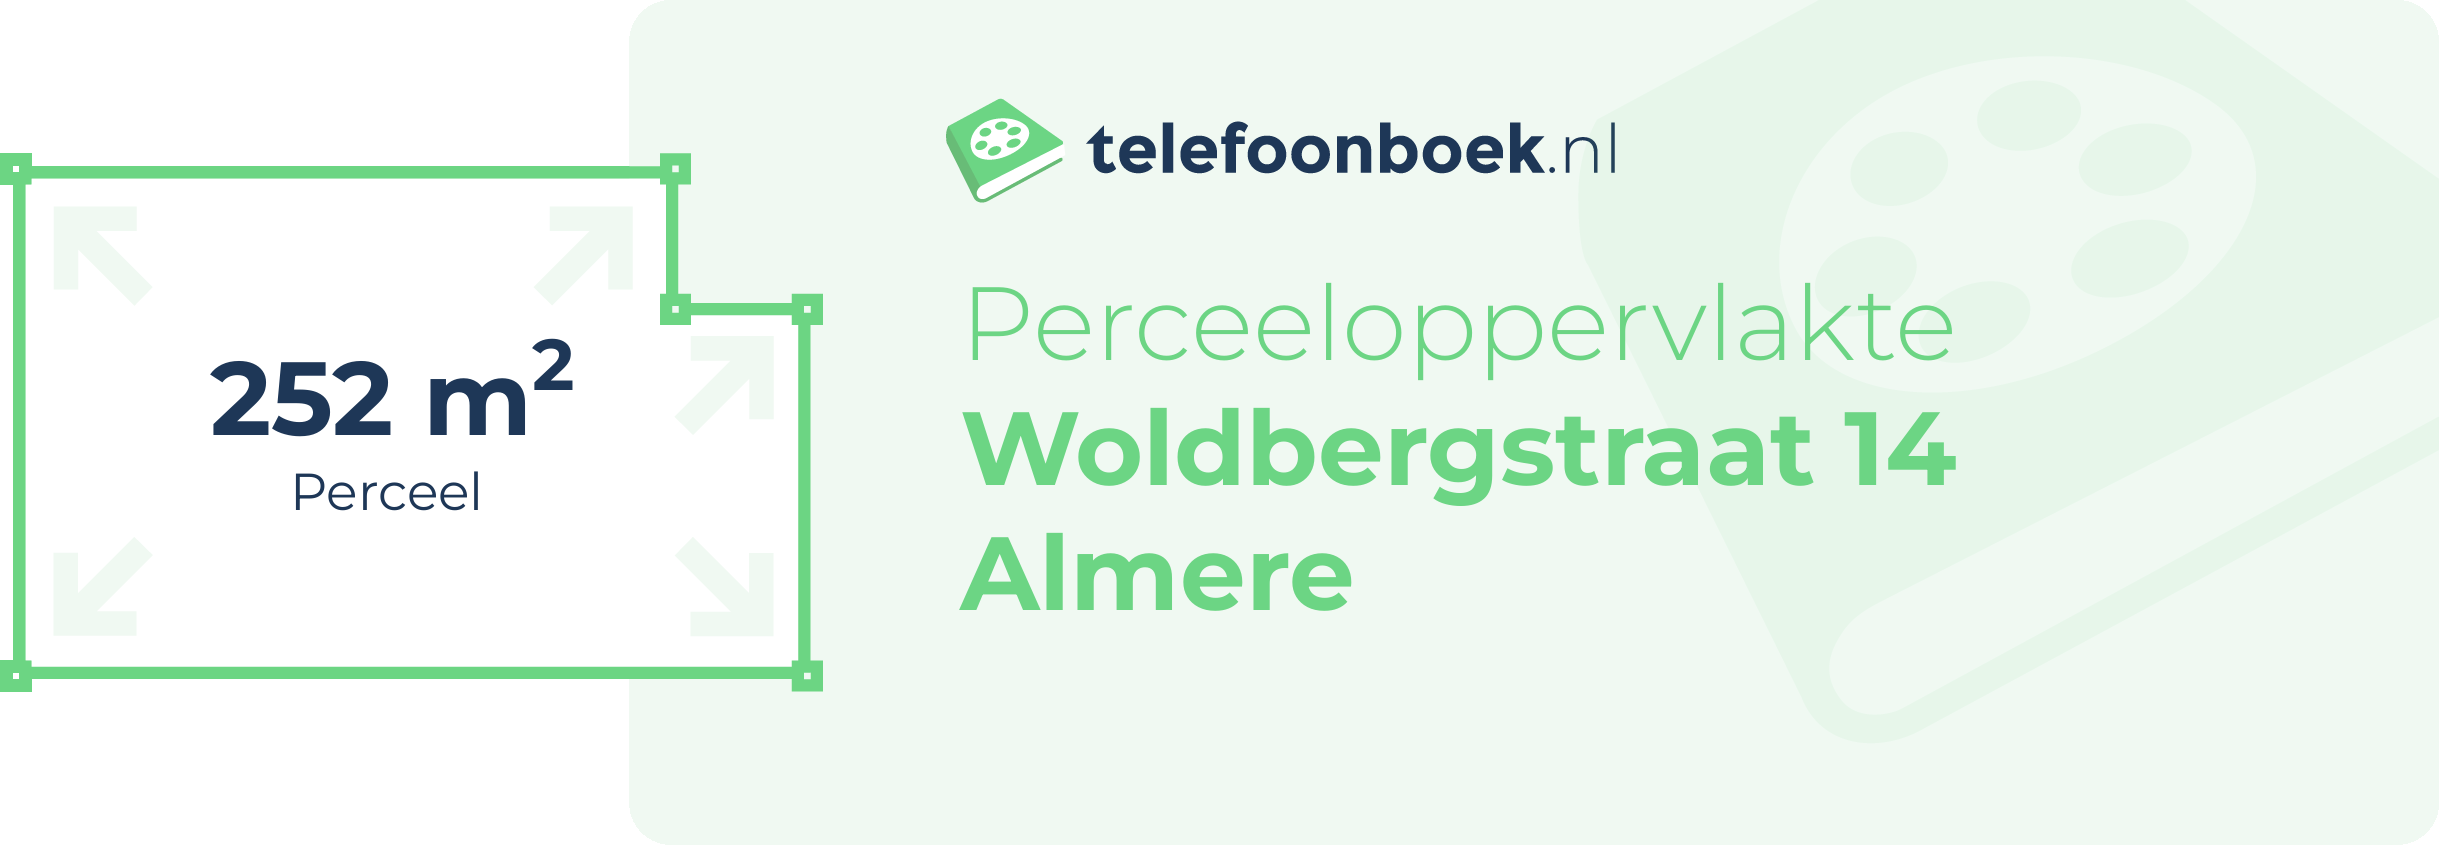 Perceeloppervlakte Woldbergstraat 14 Almere